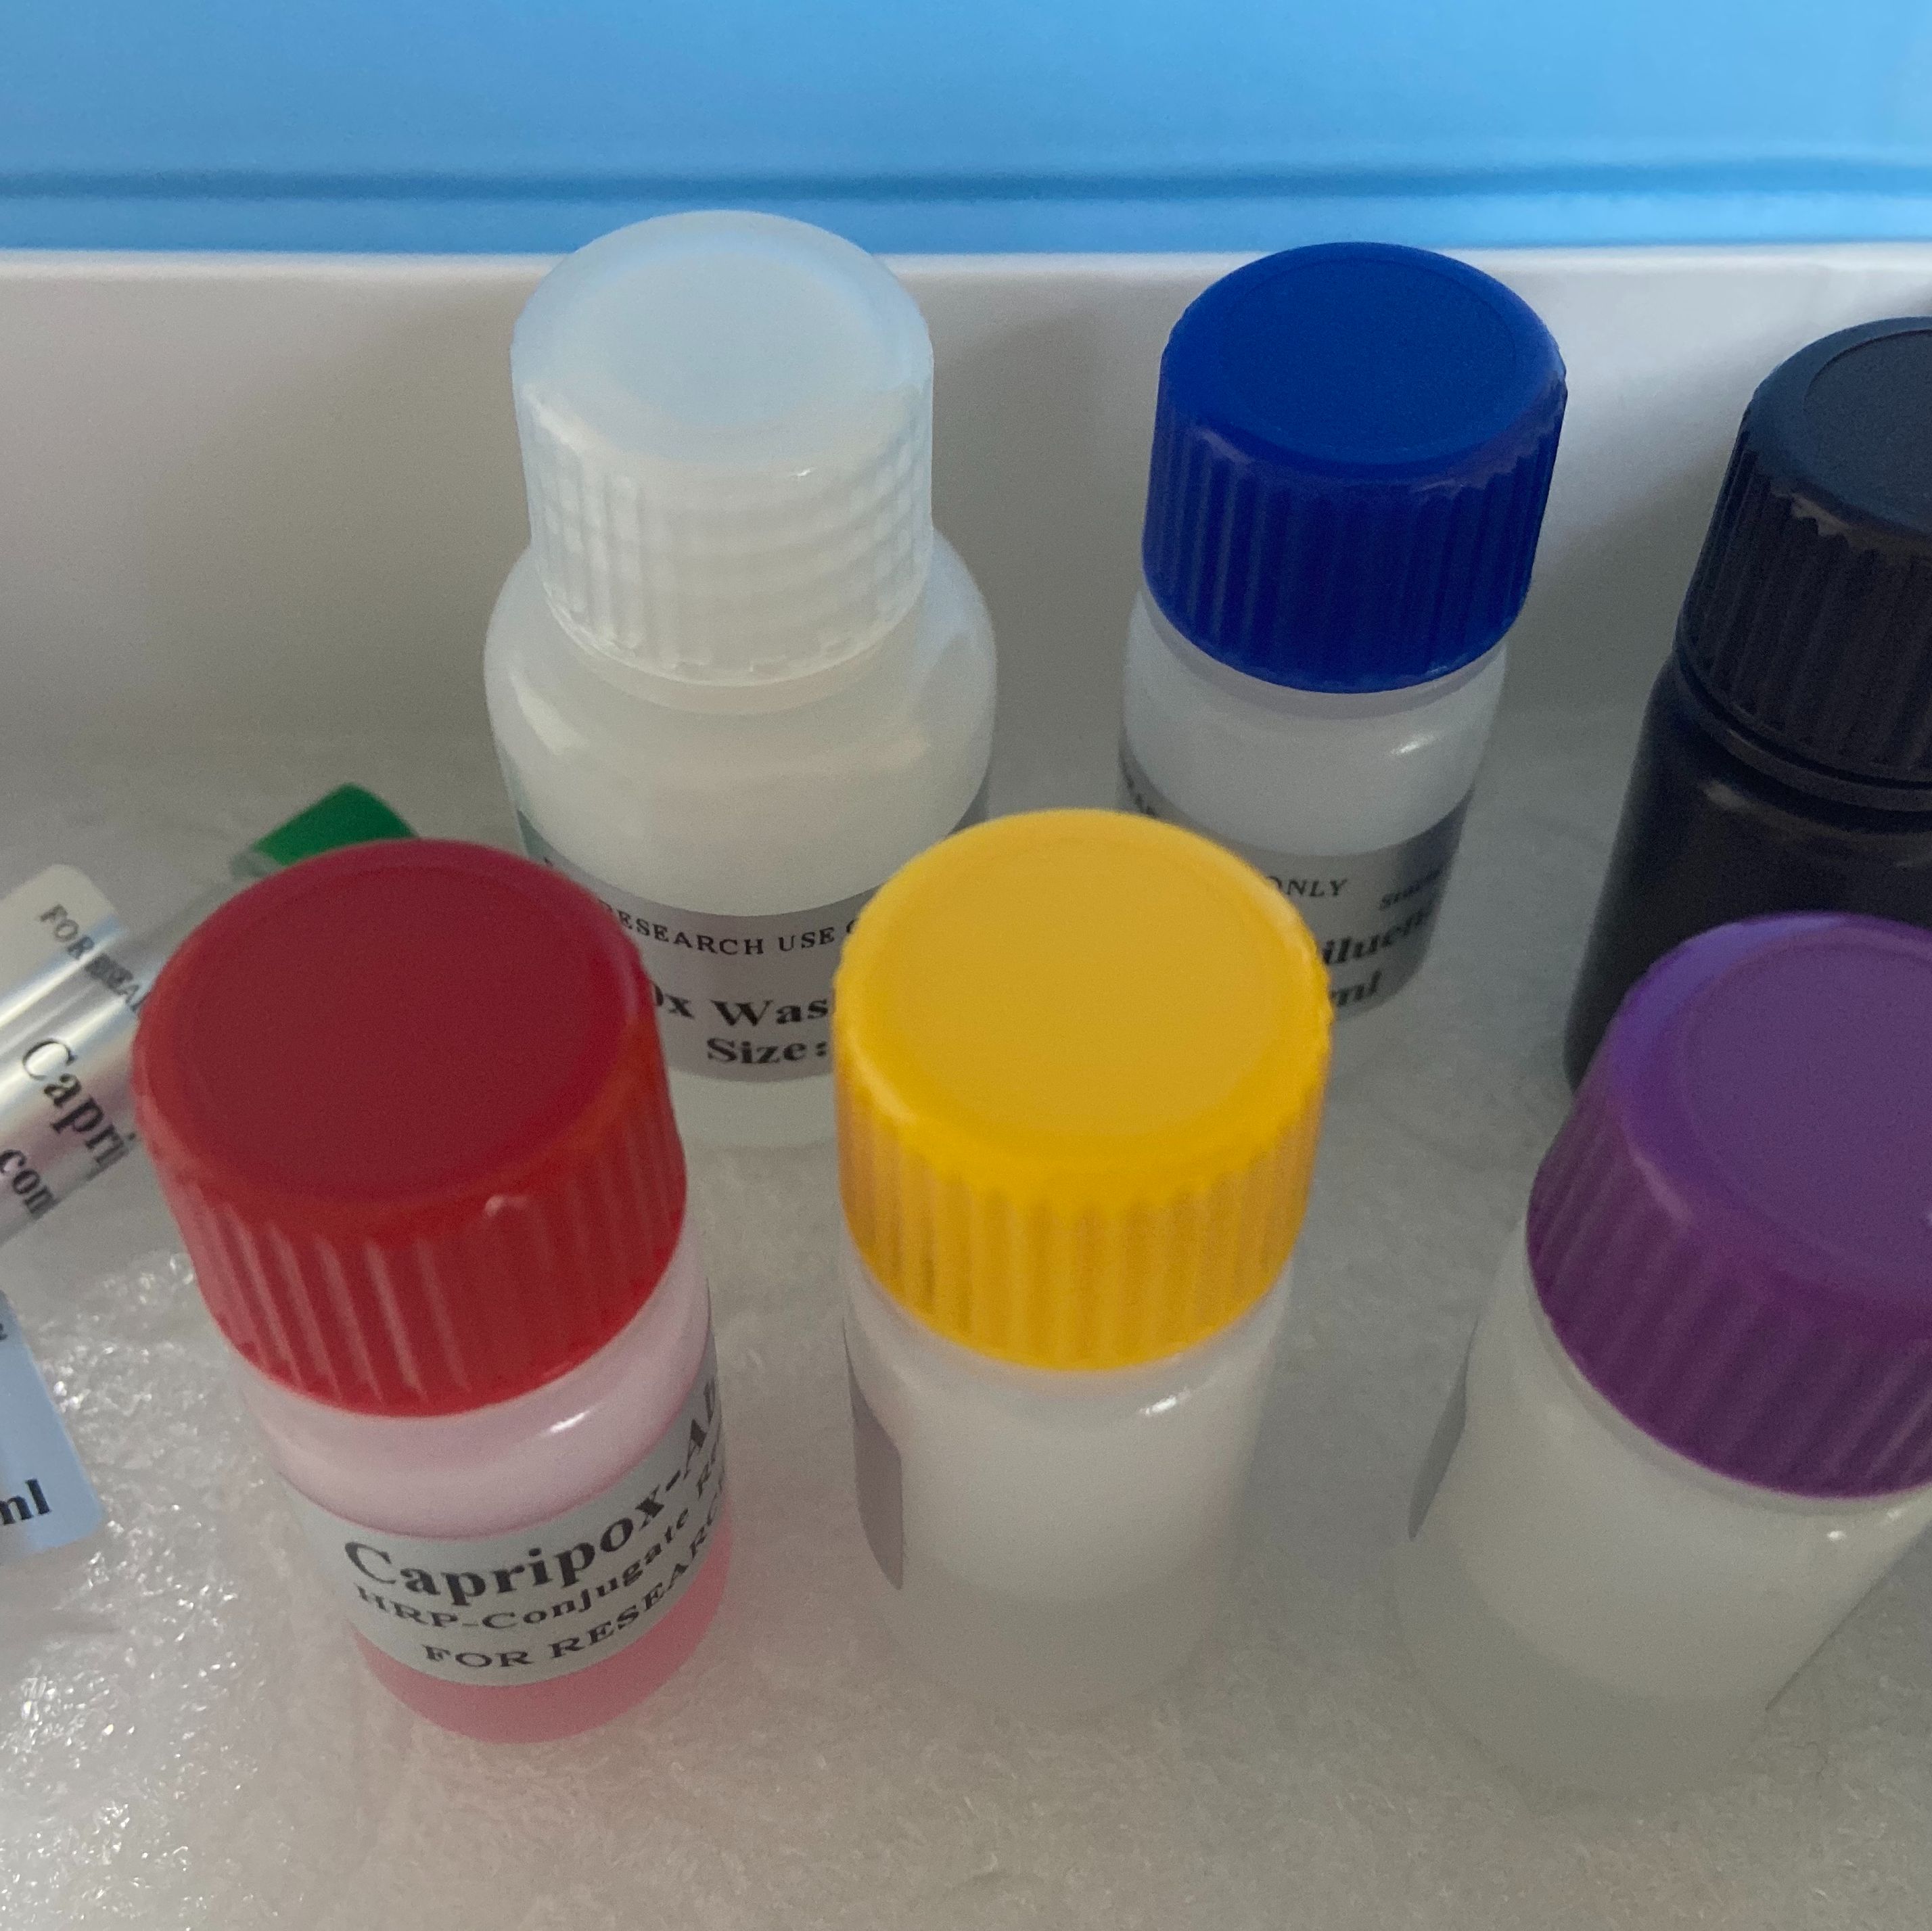 人红细胞刺激因子(ESF)ELISA试剂盒